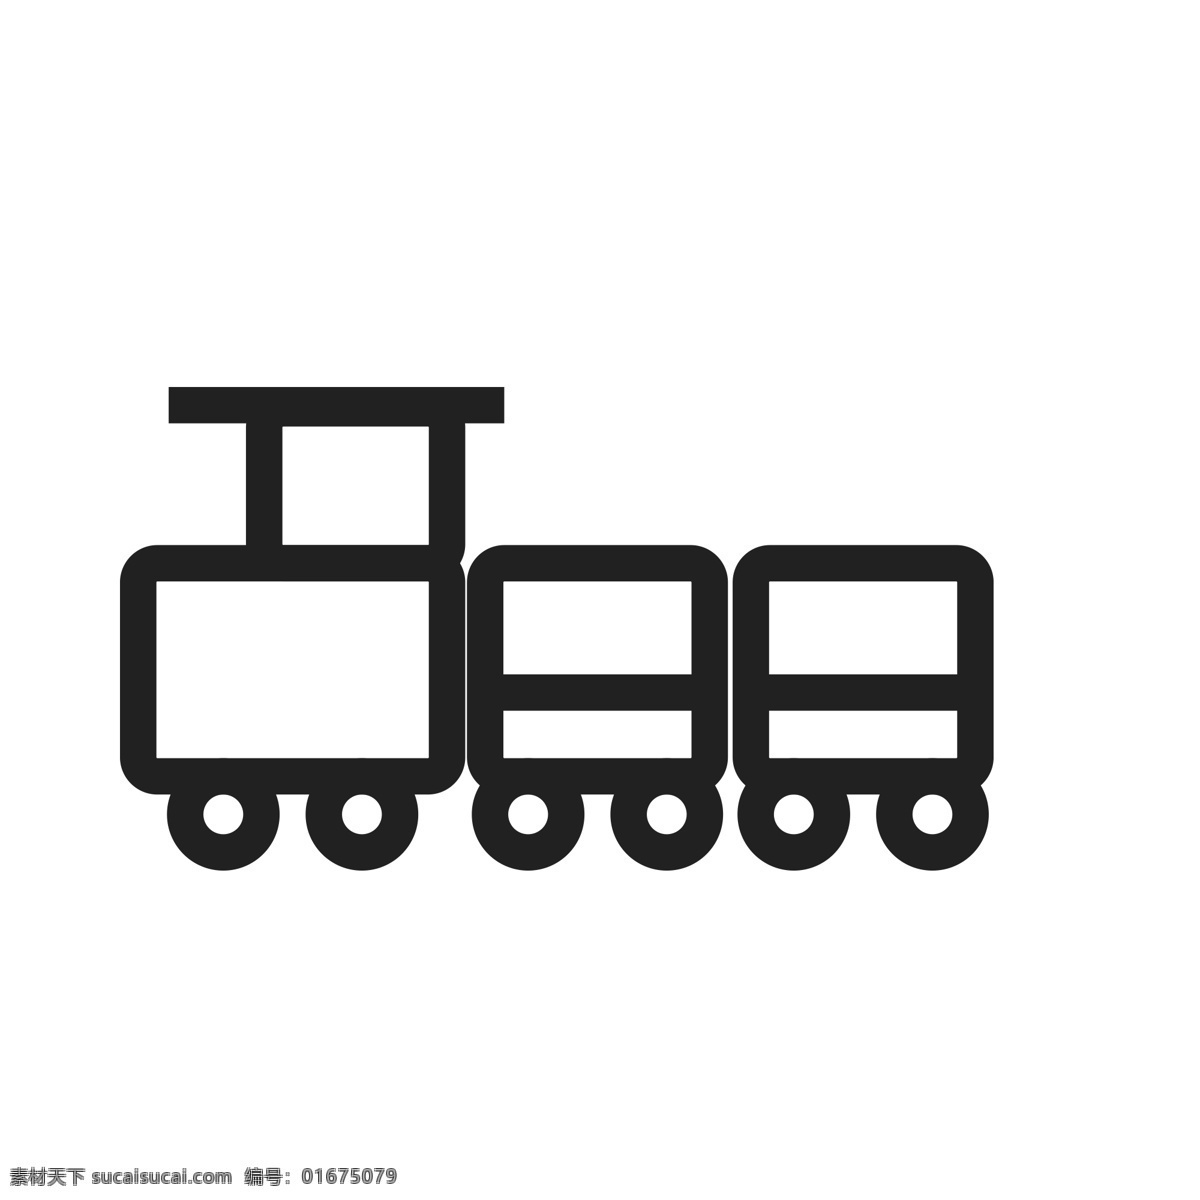 扁平化小火车 玩具火车 扁平化ui ui图标 手机图标 界面ui 网页ui h5图标